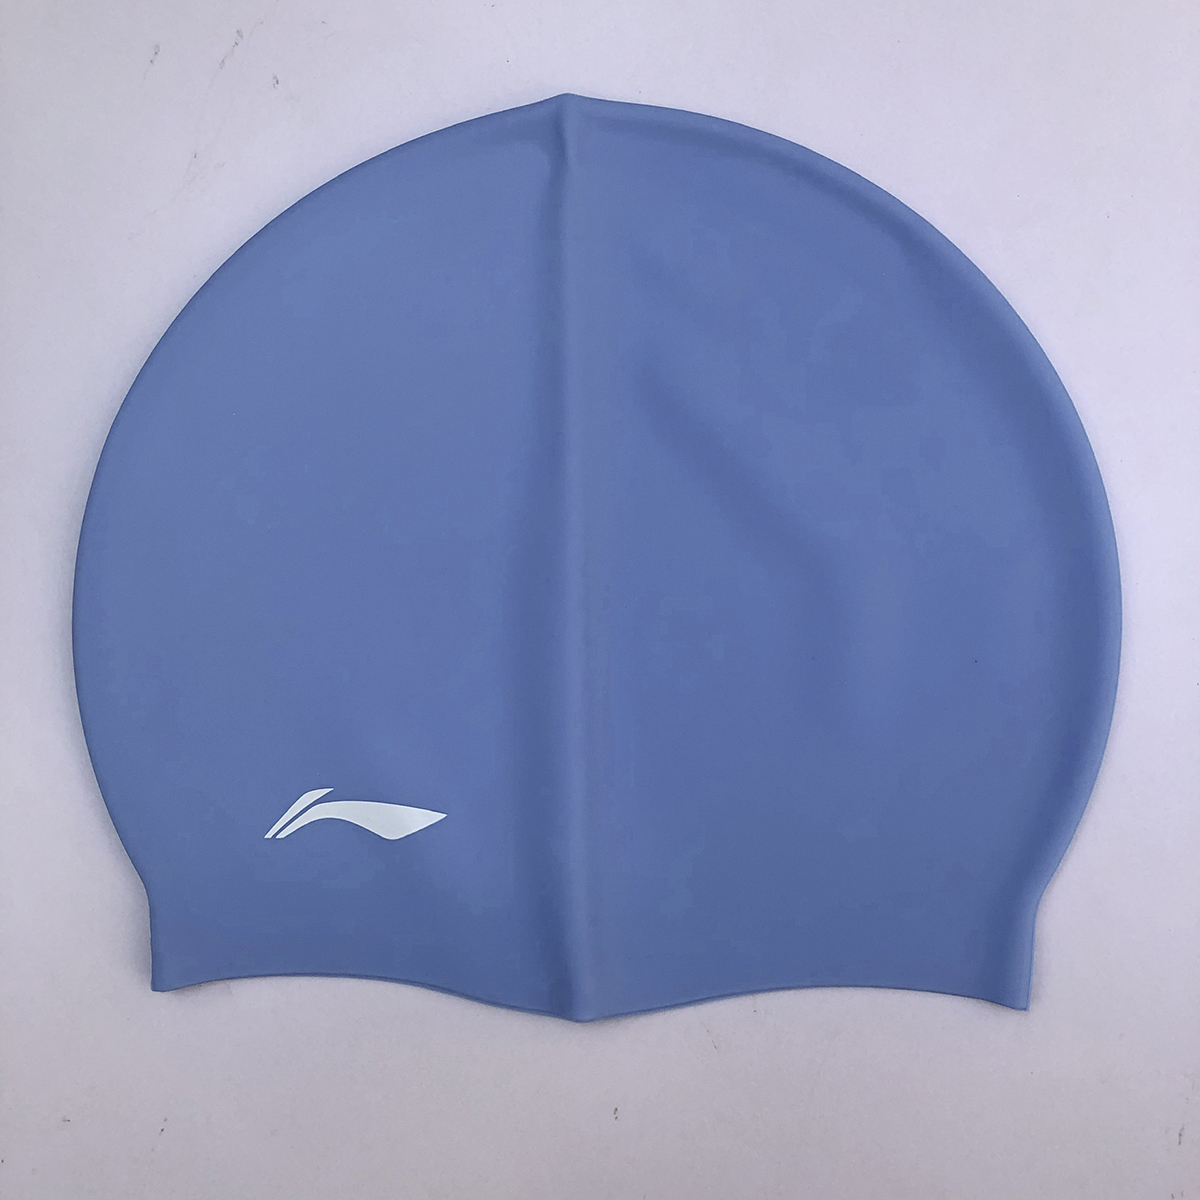 Hình ảnh Bộ Kính bơi người lớn LI-NING chống tia UV chống sương mù kèm nút bịt tai (Xanh Trắng) và Nón bơi LI-NING (Xanh dương) - Hàng chính hãng 